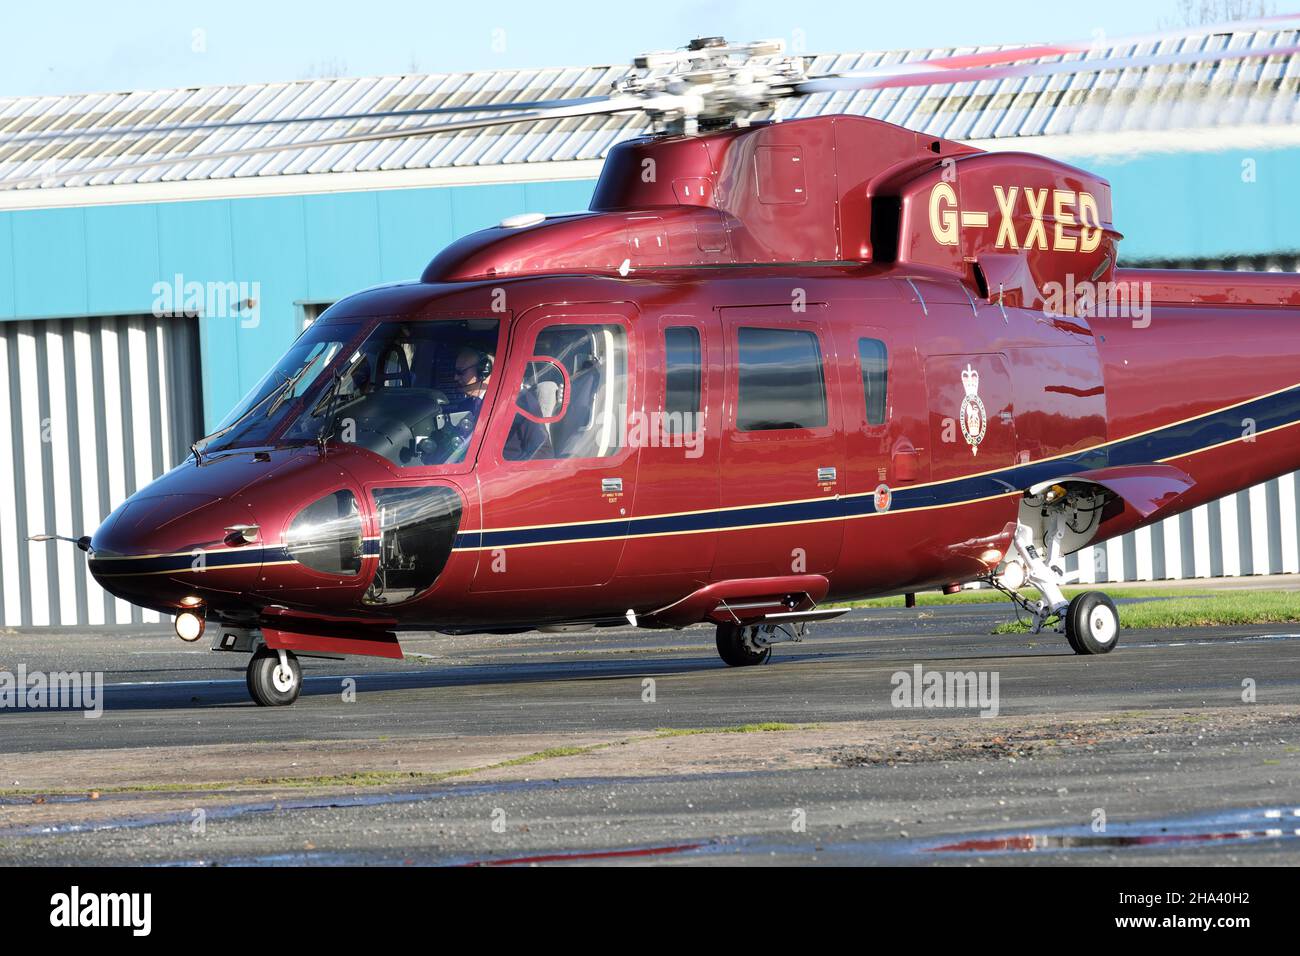 El helicóptero de Queens Flight Sikorsky S-76C fue por miembros del registro de la Familia Real G-XXED visto en 2021 Foto de stock